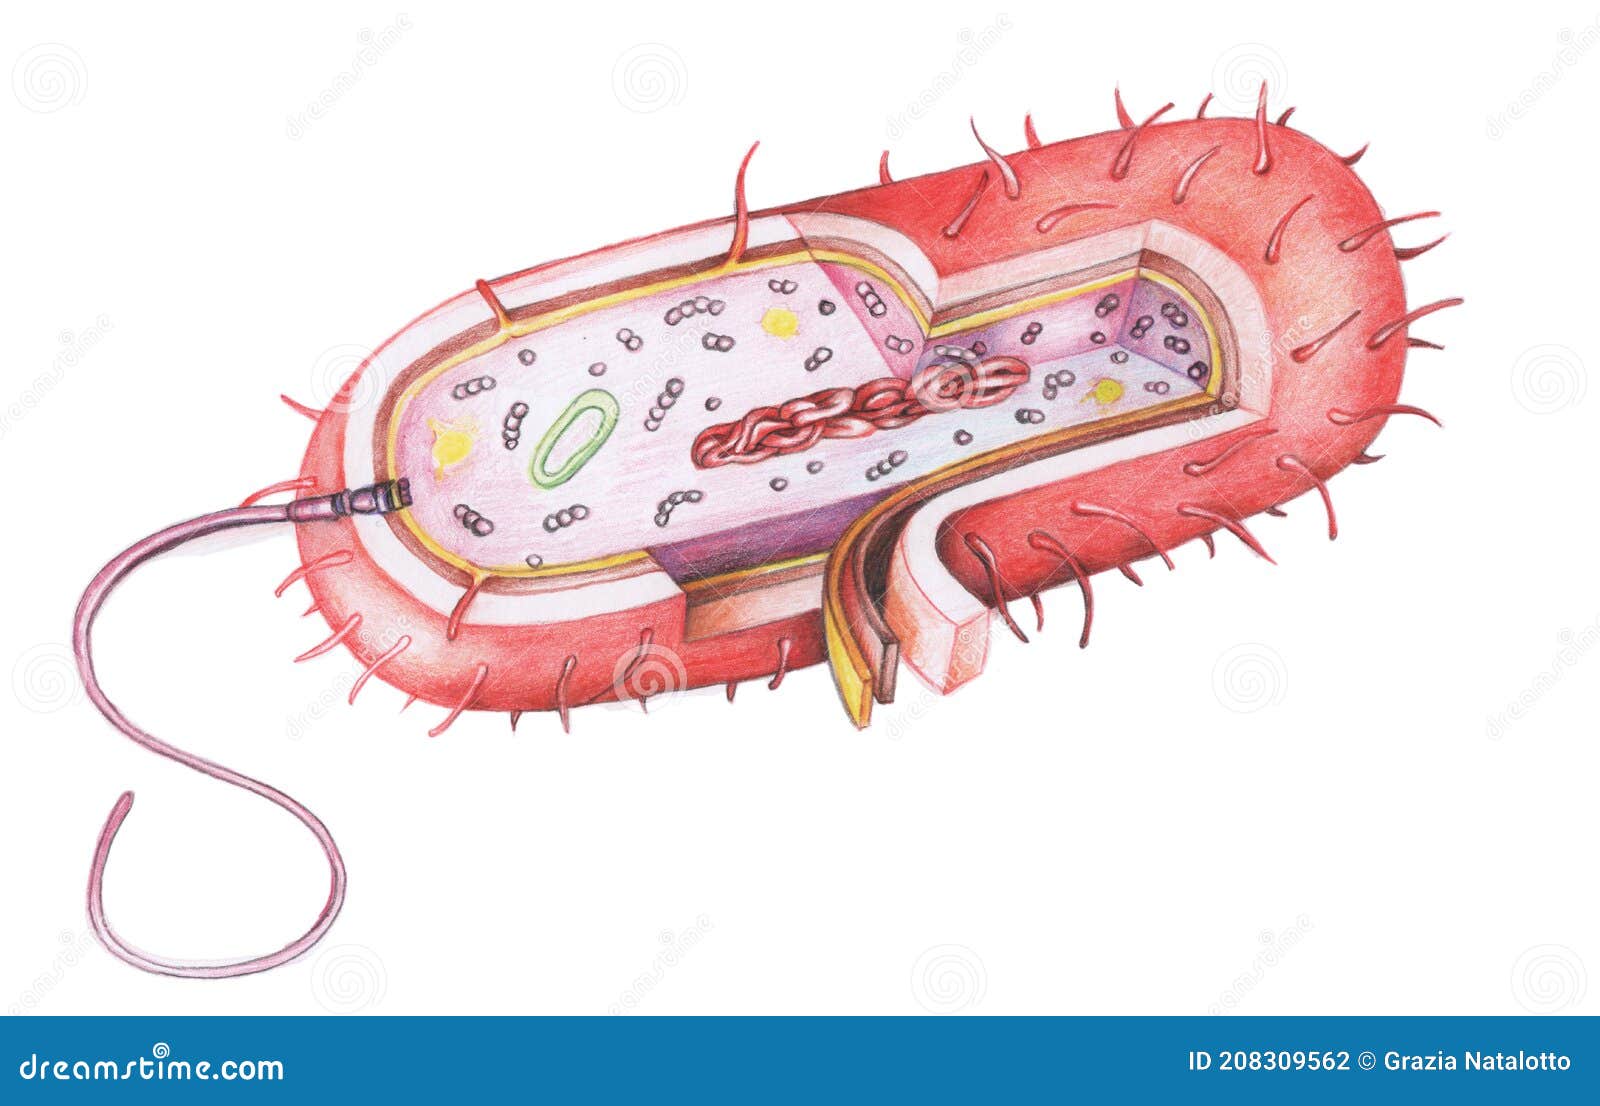 Dibujo De Células Procariotas Stock de ilustración - Ilustración de  medicina, ciencia: 208309562